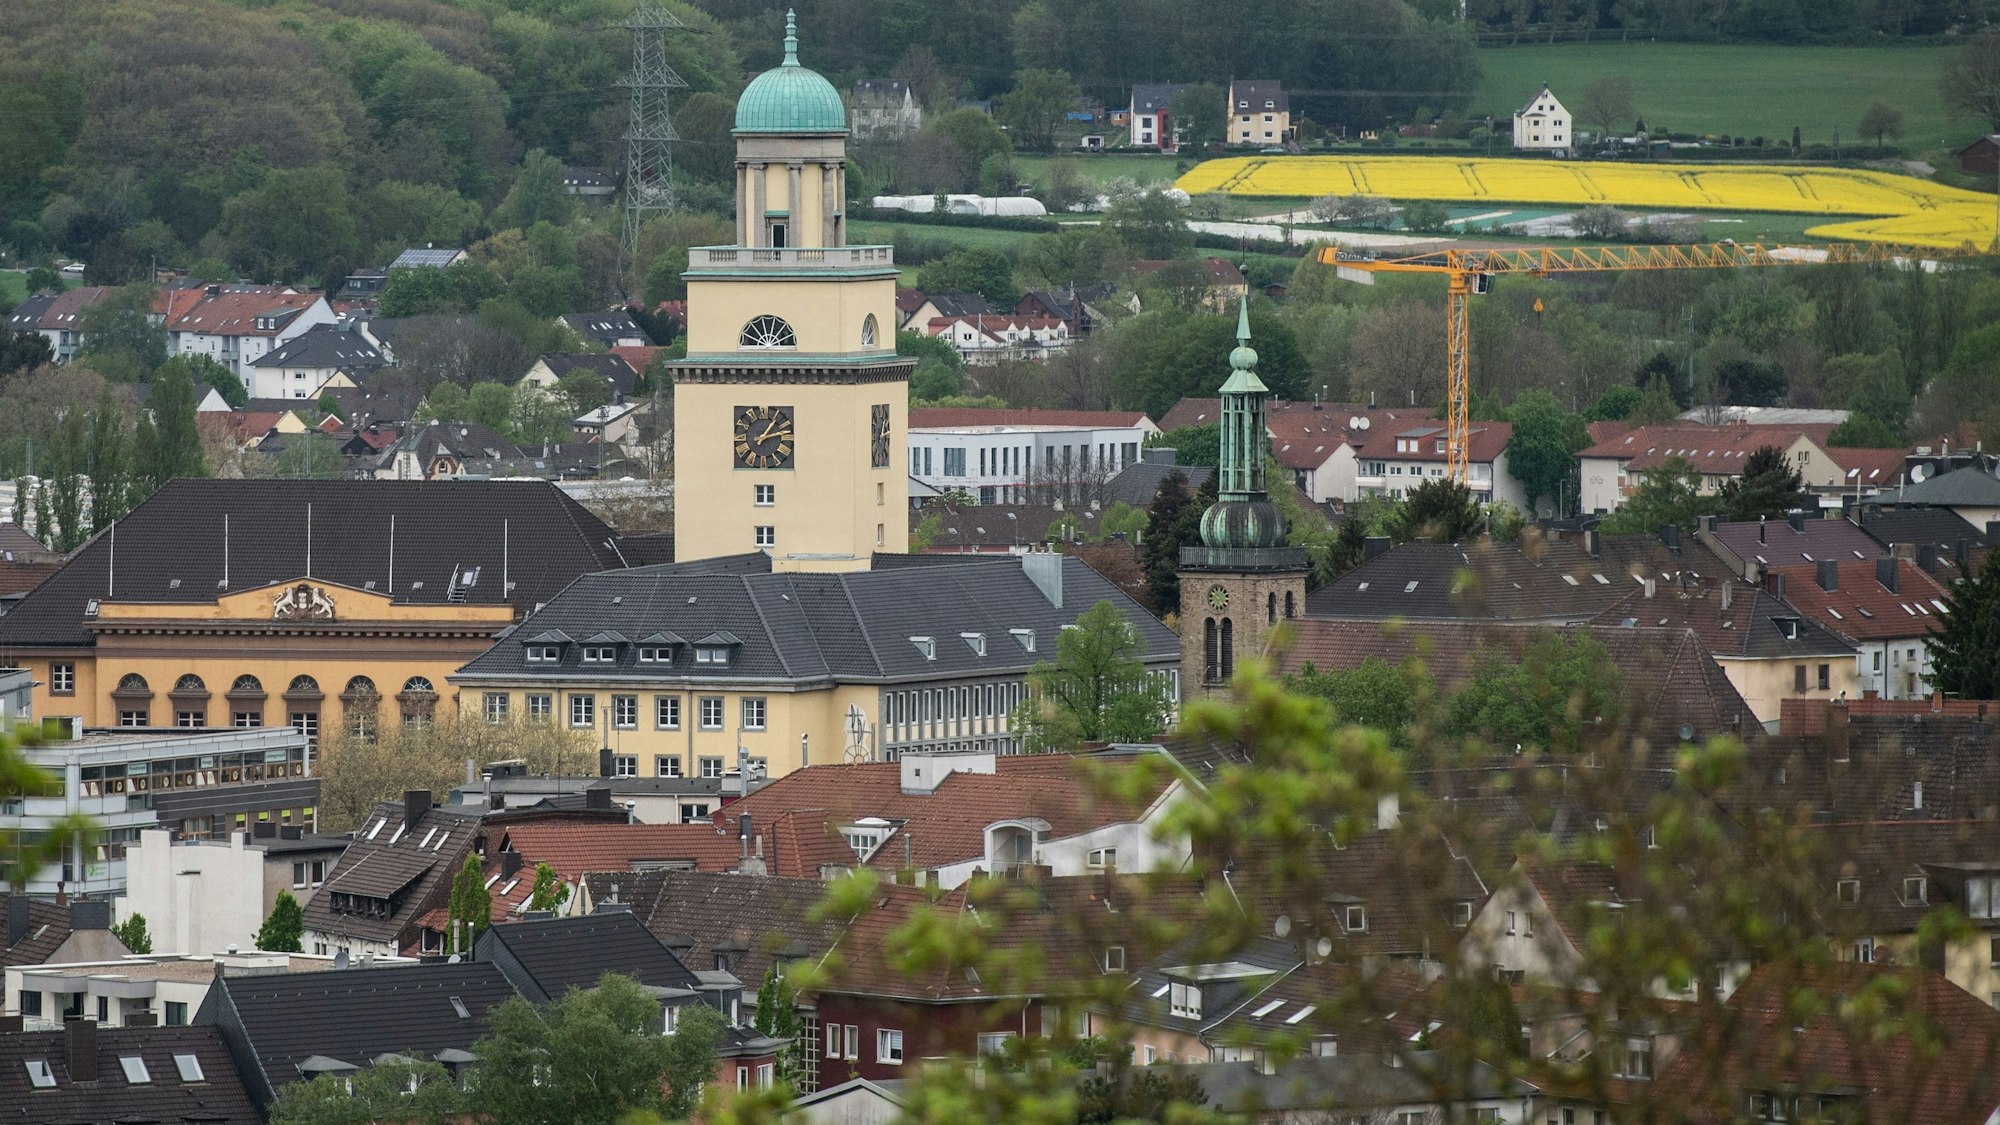 Der Turm des Rathauses in Witten ist über den Dächern zu sehen.